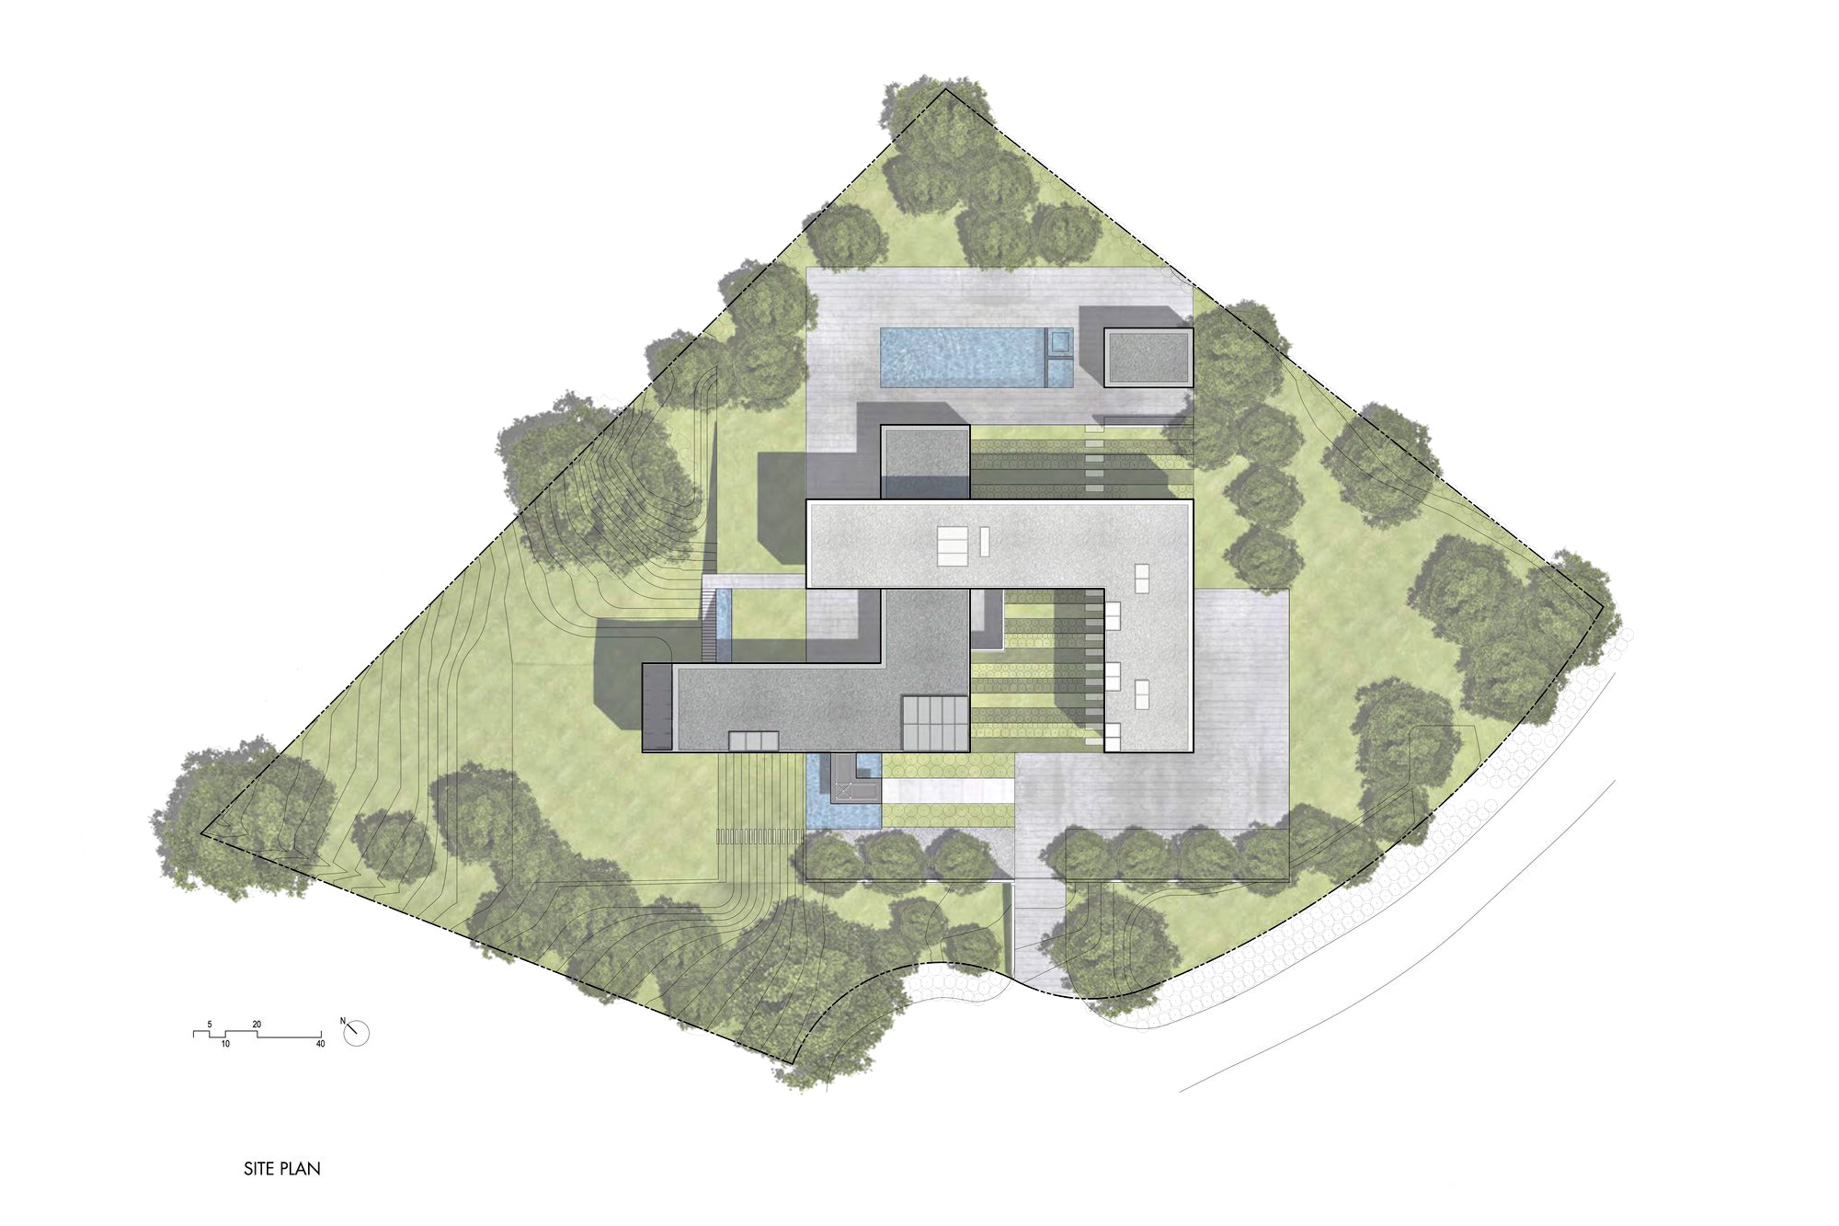 Site Plan - Oz House Luxury Residence - Ridge View Dr, Atherton, CA, USA